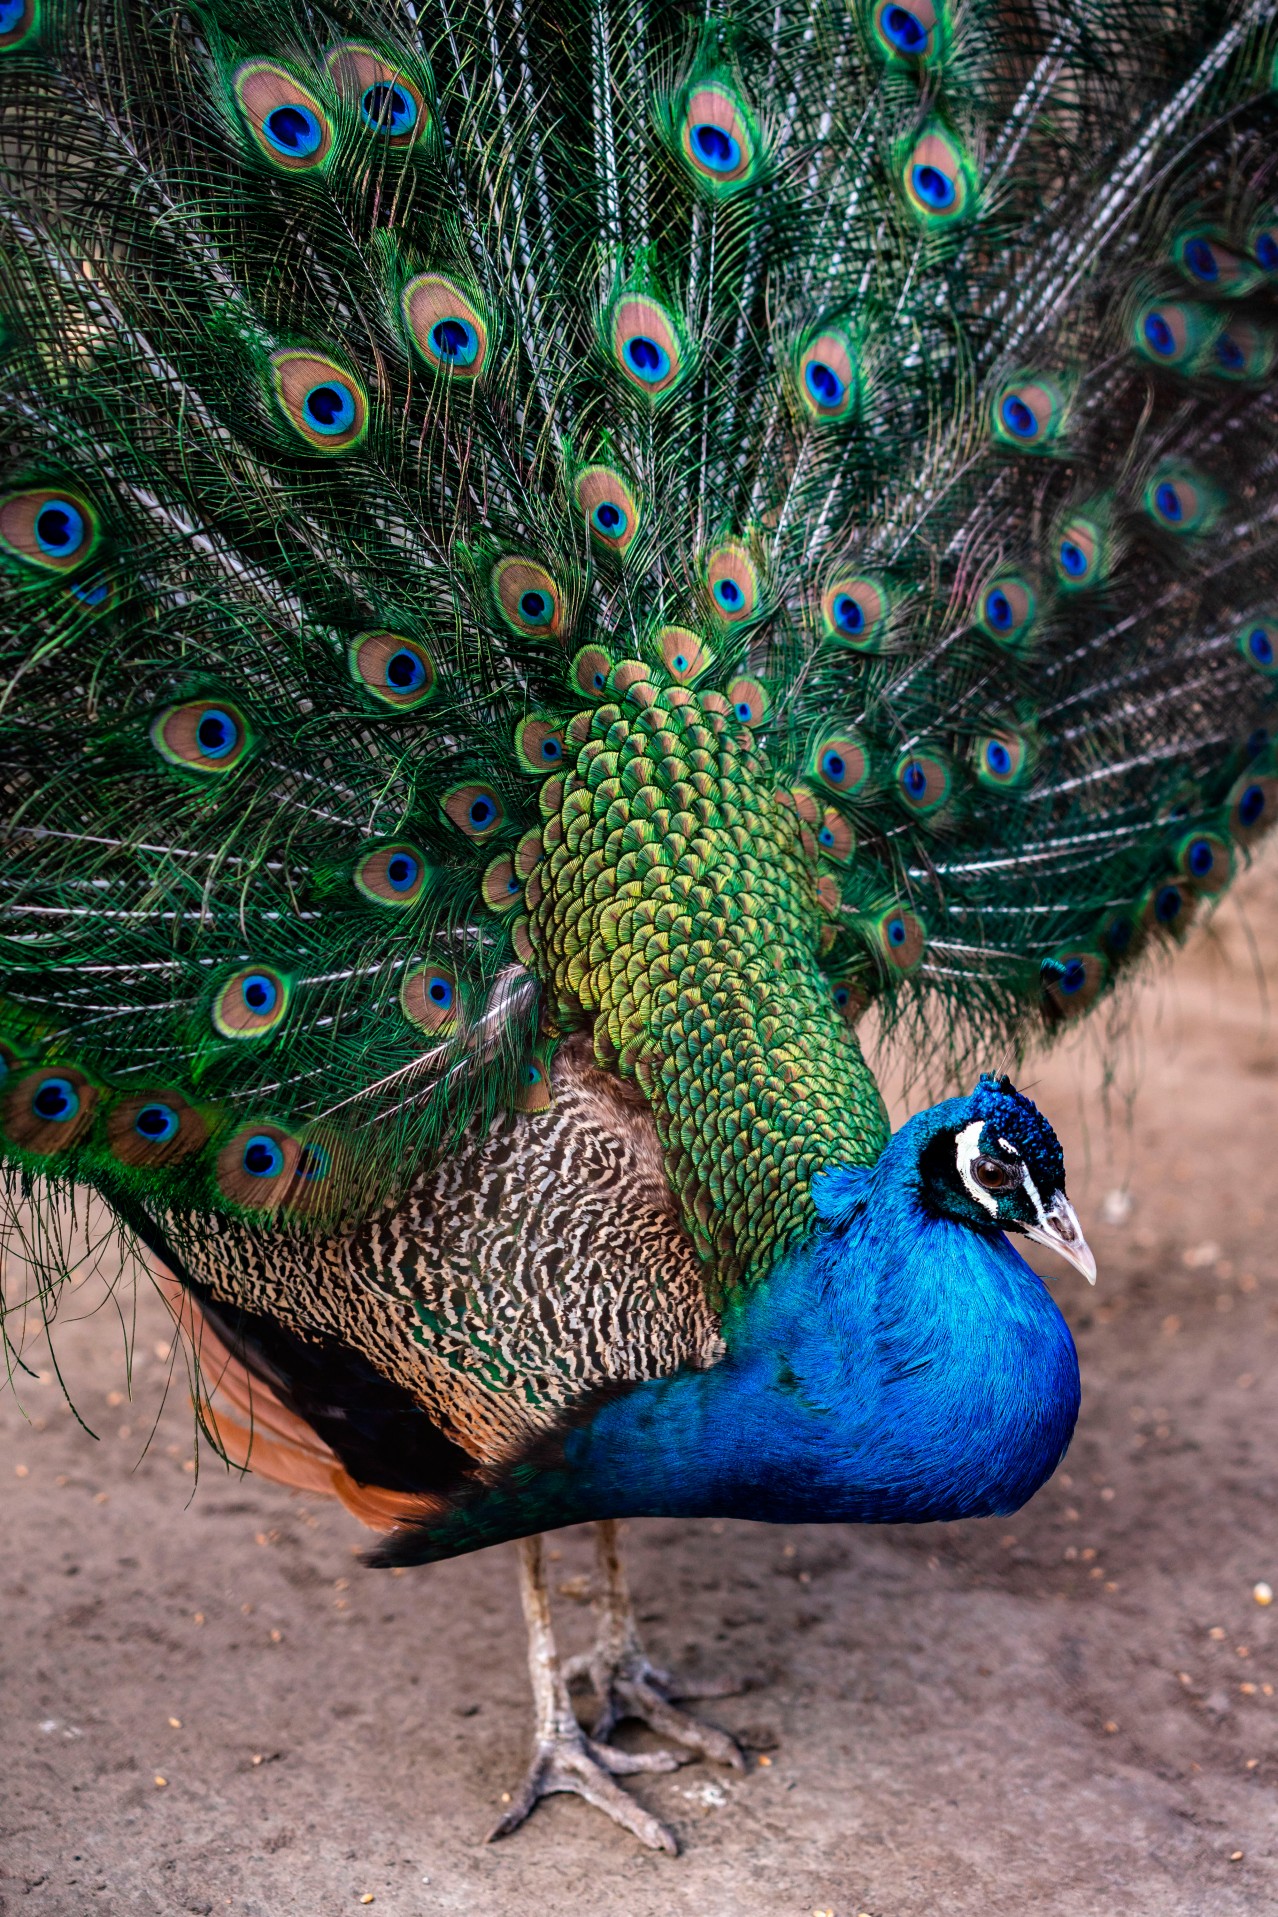 Beautiful peacock bird with green tale